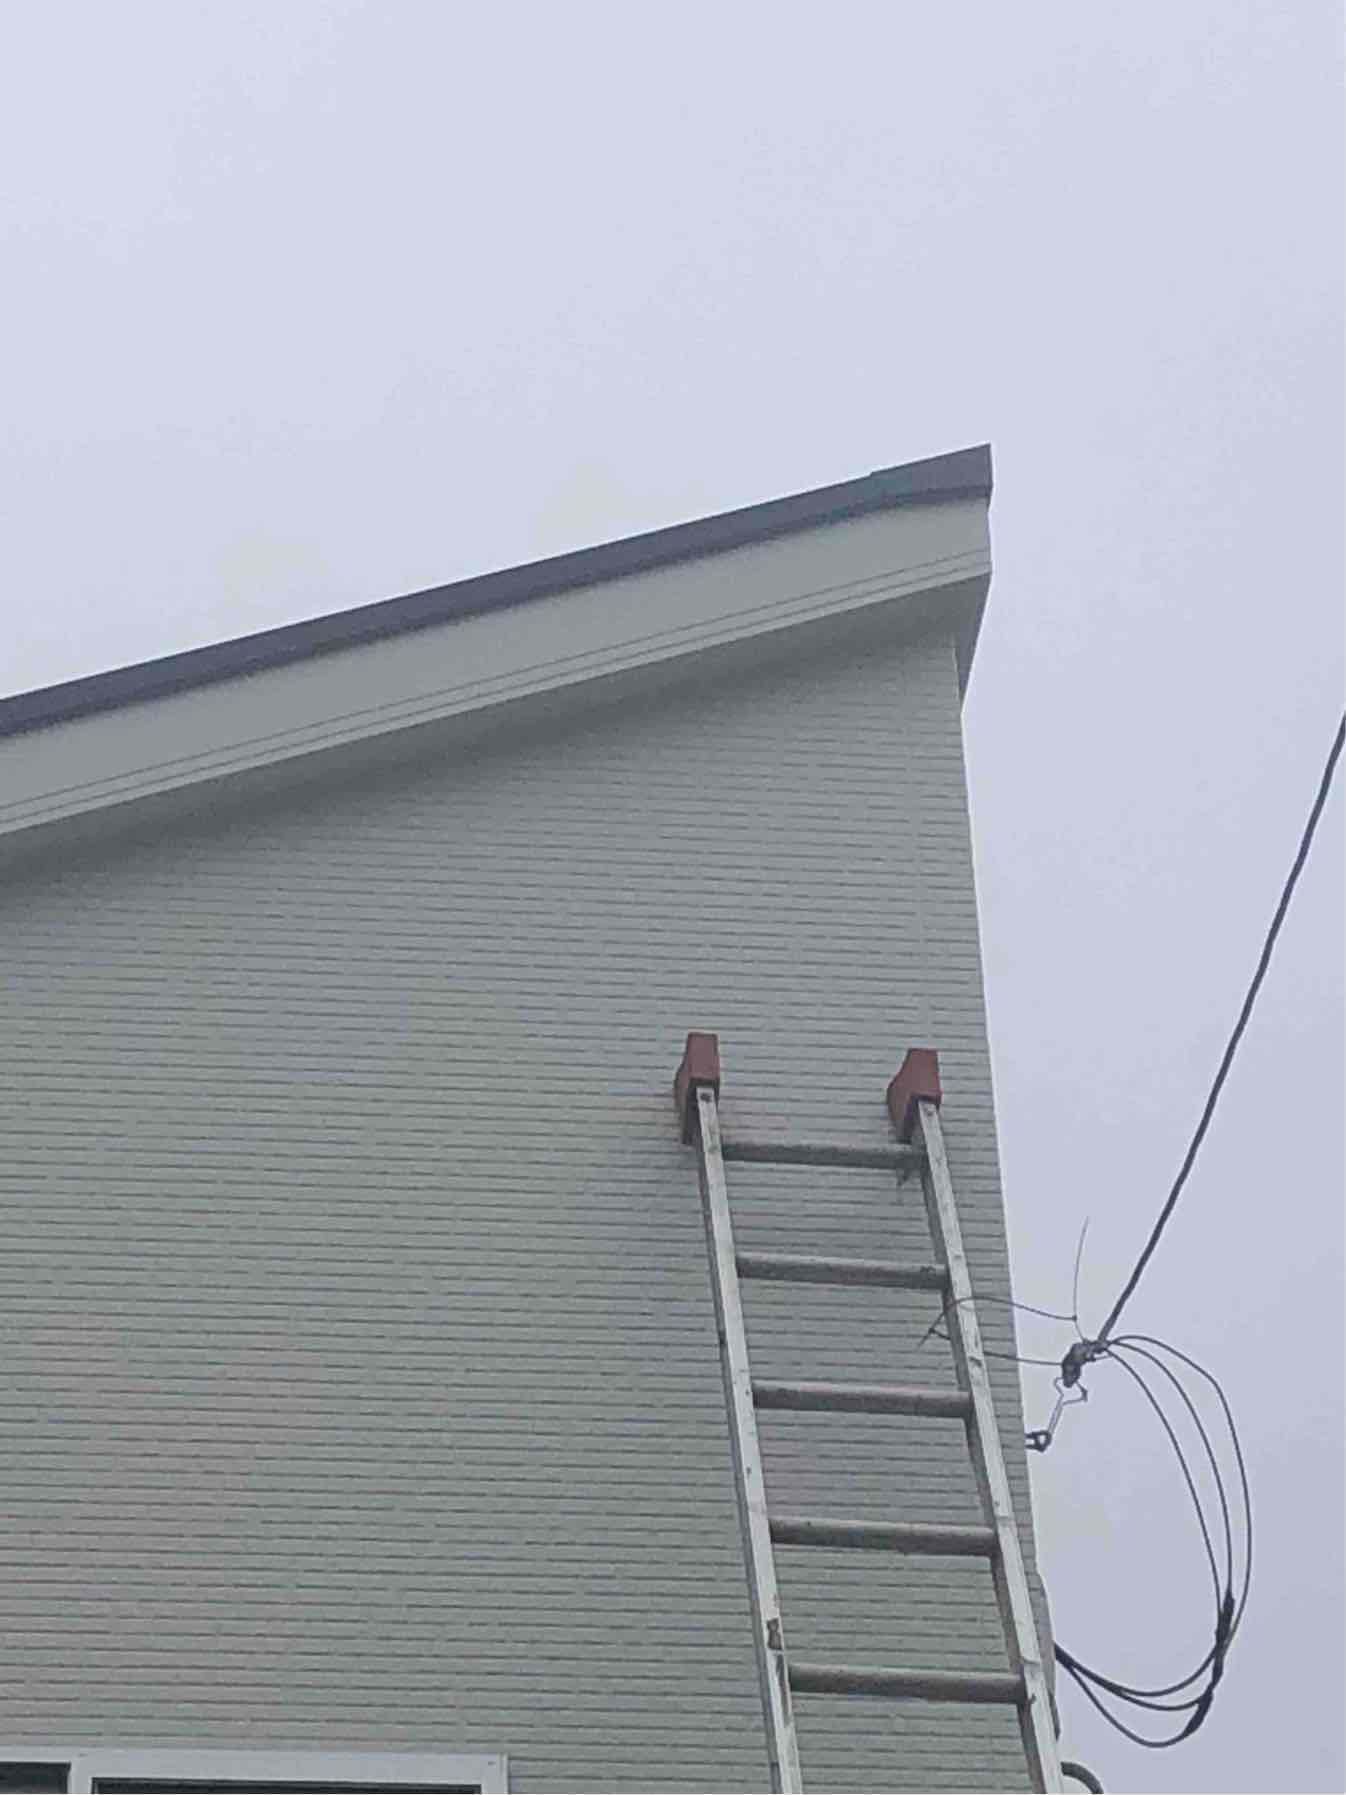 戸建住宅の外壁に立てかけた梯子